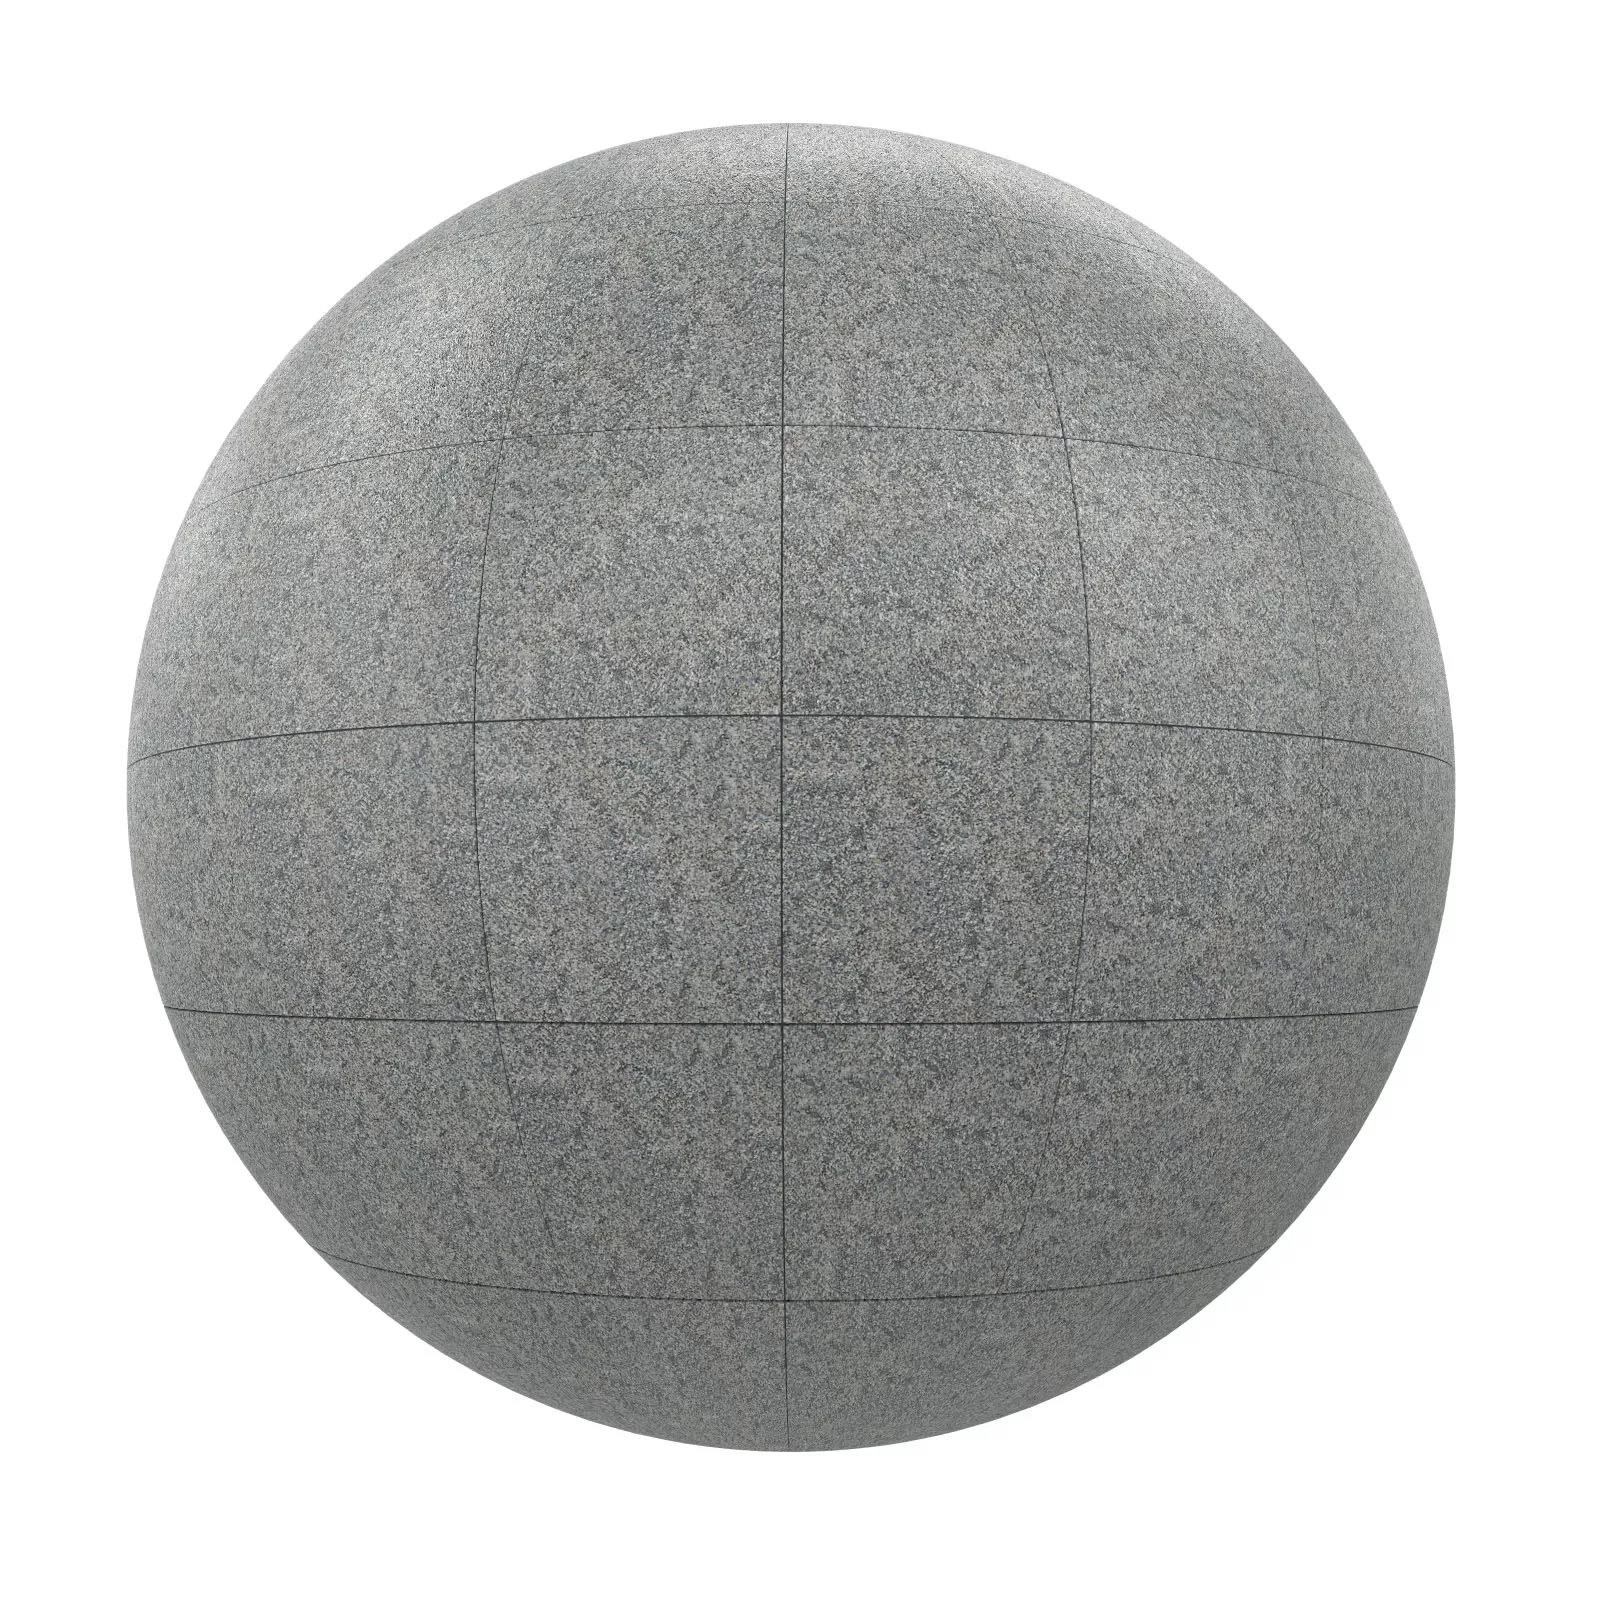 PBR CGAXIS TEXTURES – TILES – Grey Tiles 12